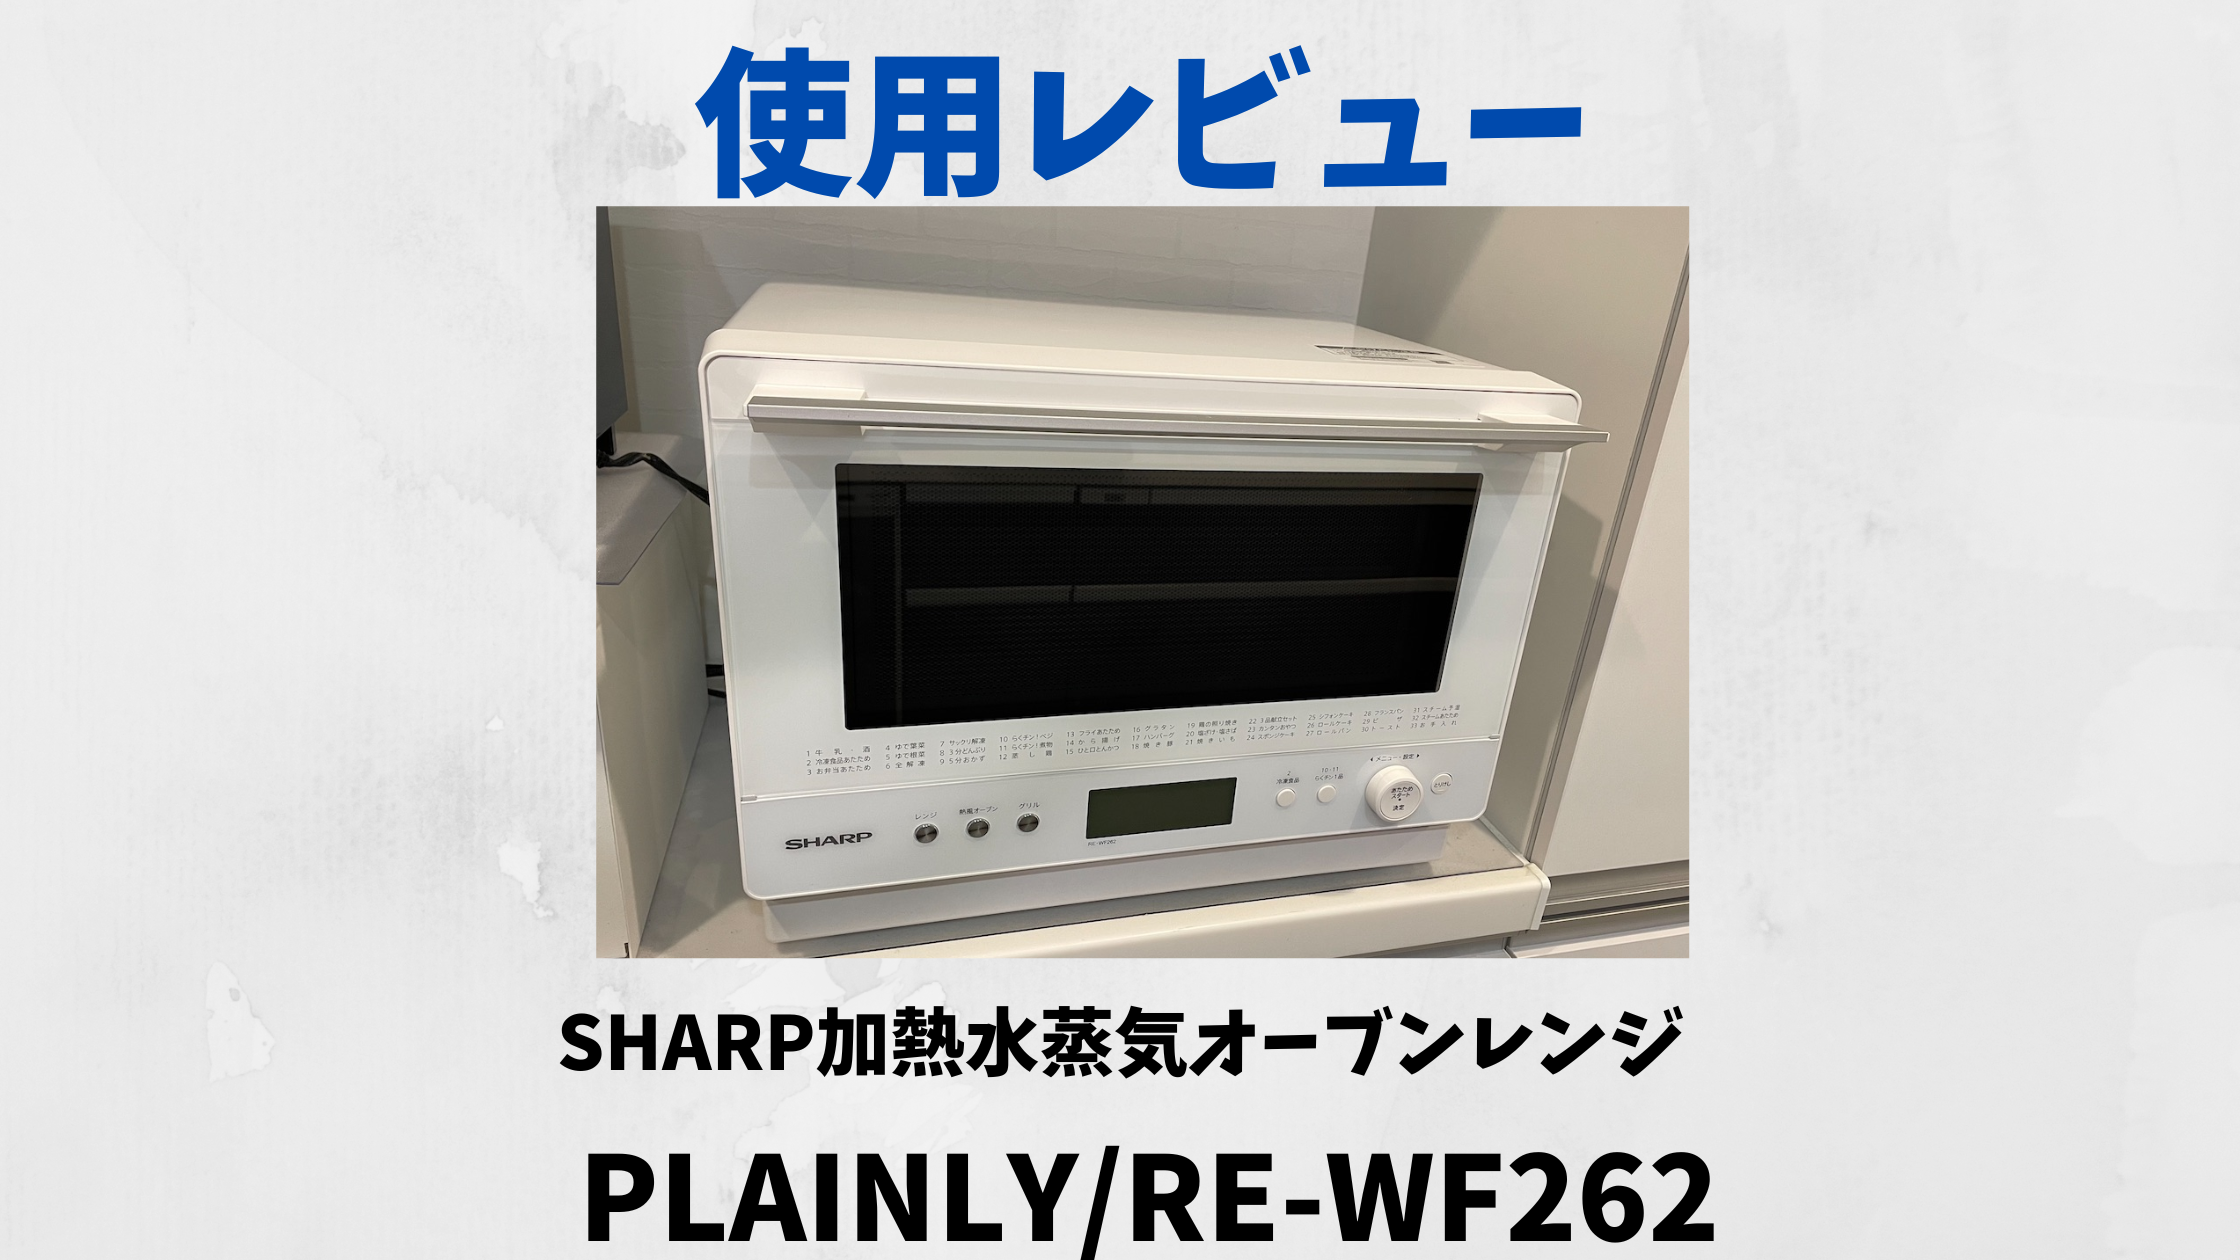 SHARP RE-WF262 オーブンレンジ